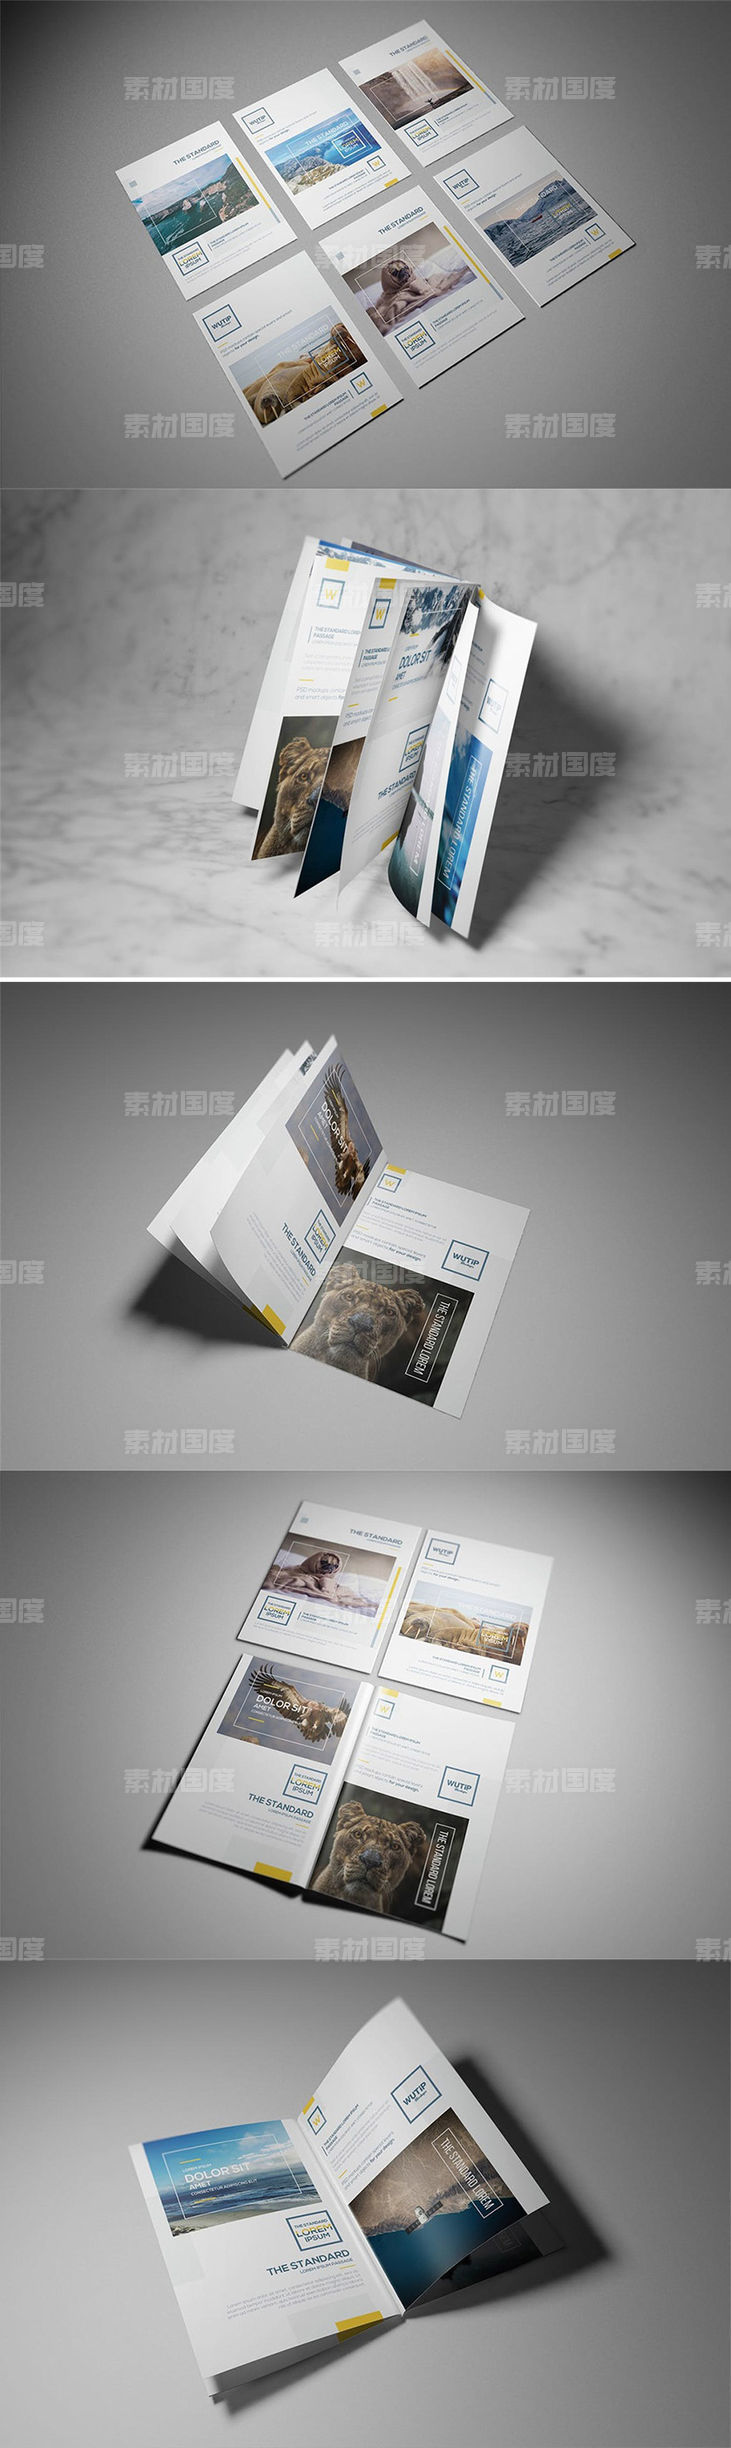 时尚A4A5宣传册房地产楼书品牌手册画册杂志设计VI样机展示模型